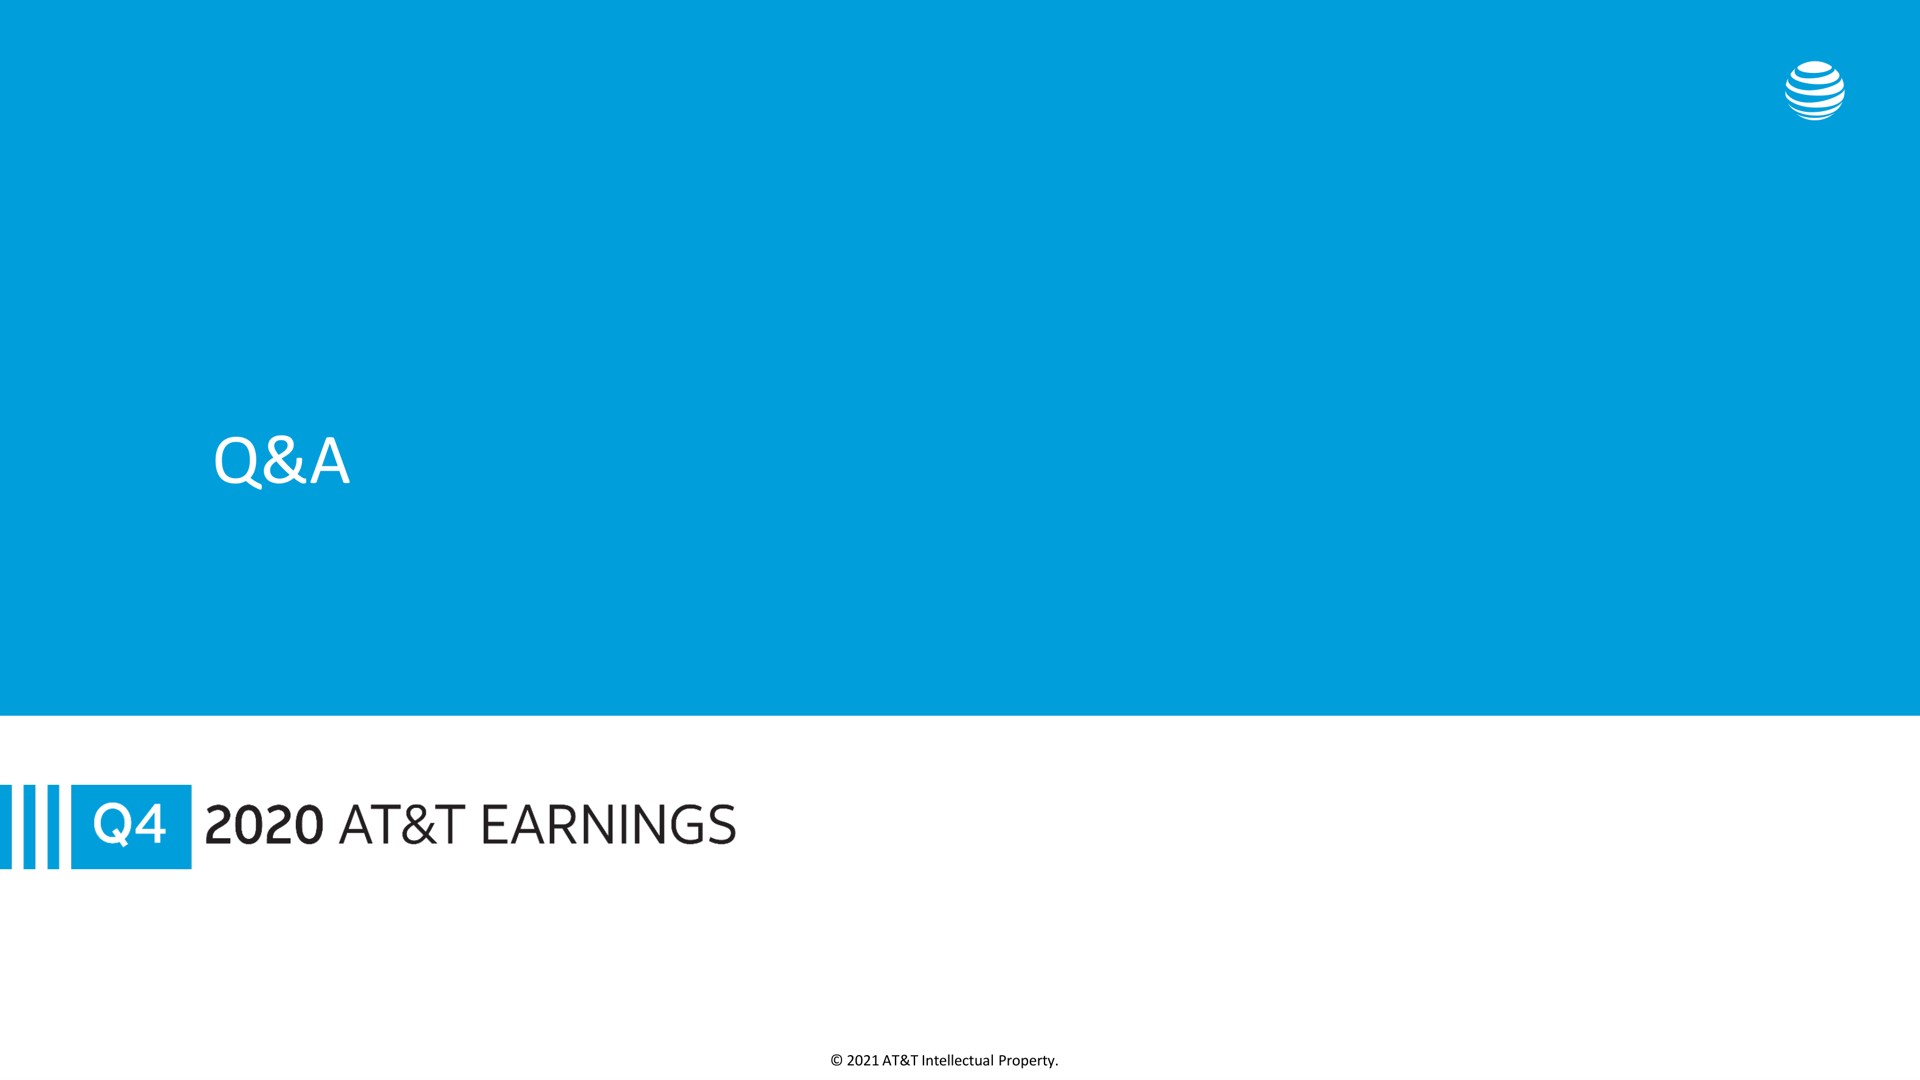 a at earnings | AT&T